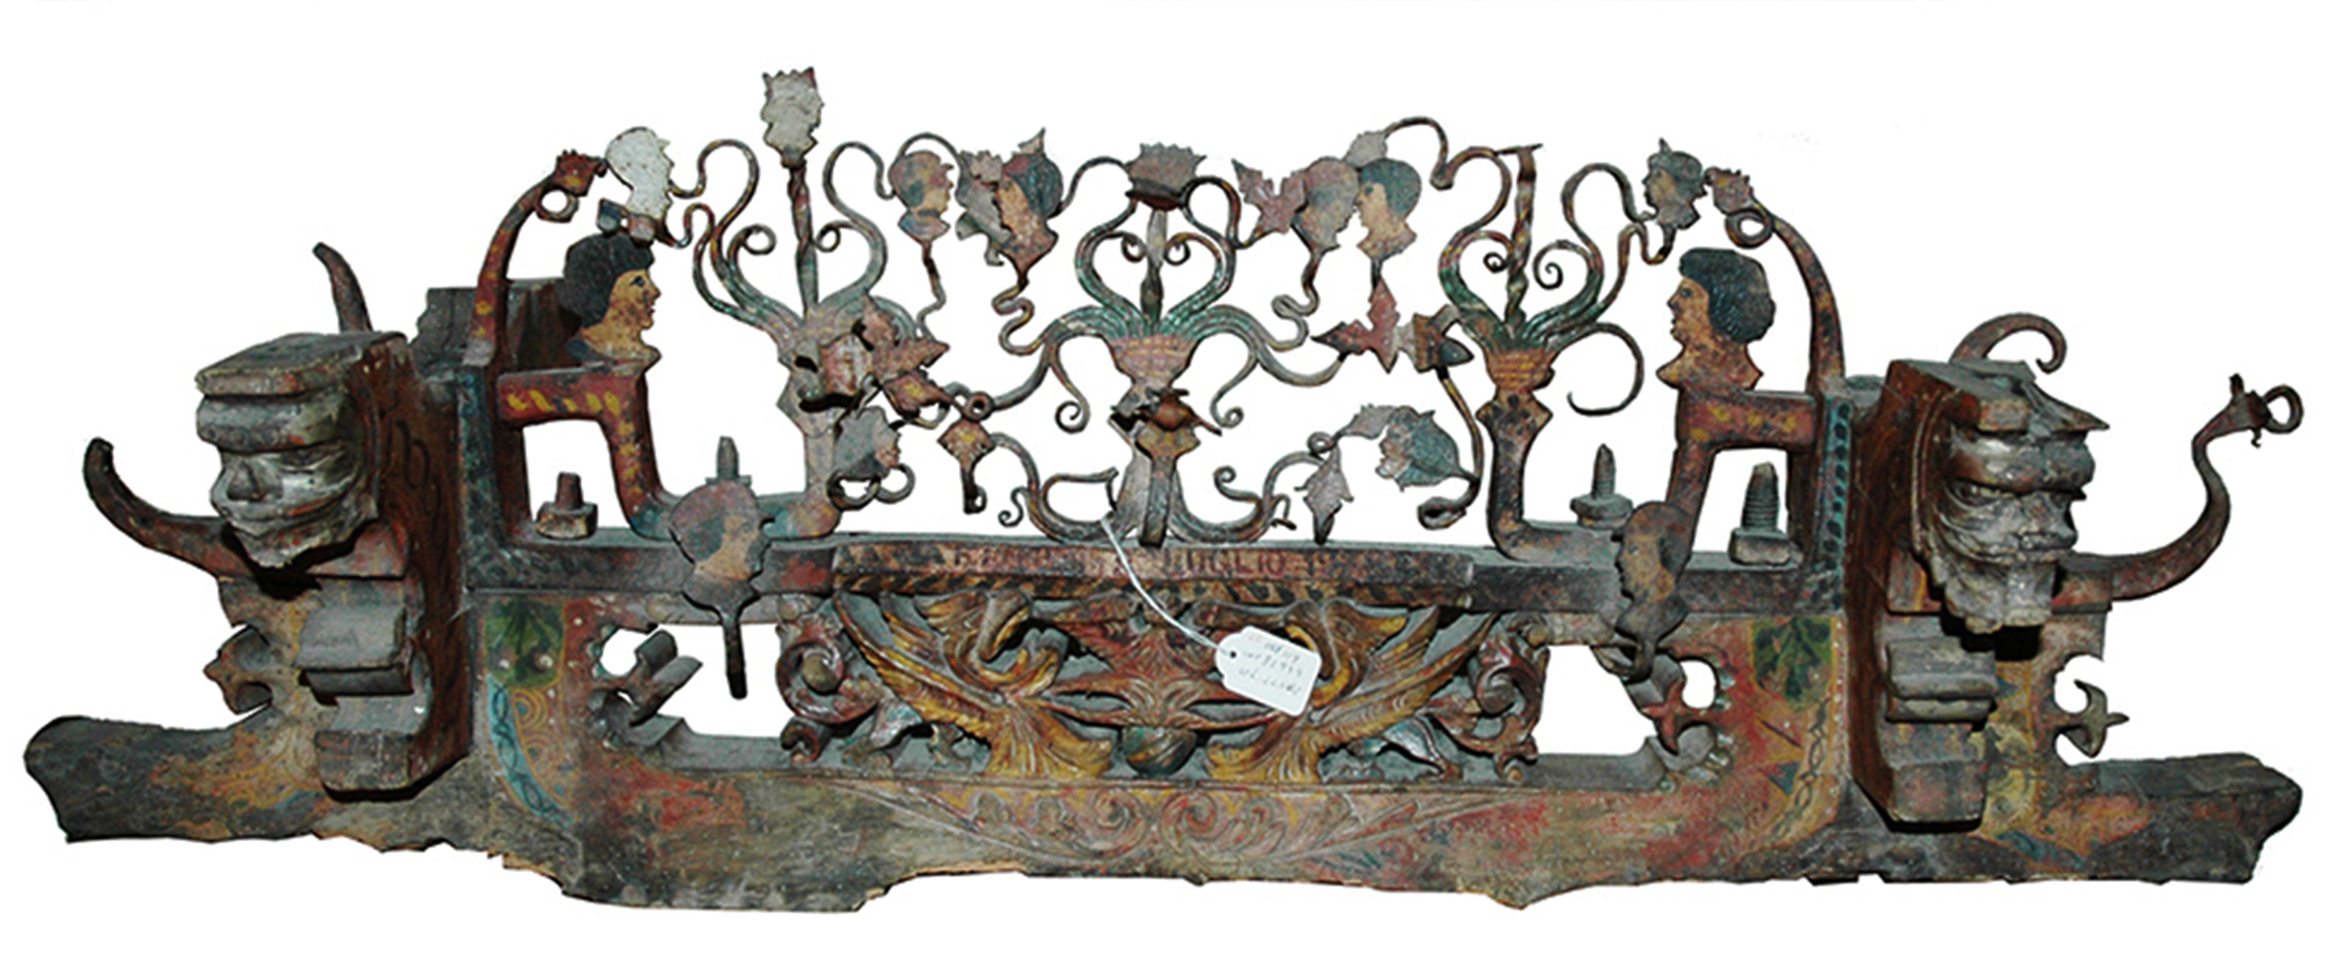 Cassa d’asse di carretto, completa di decorazioni in ferro battuto e in legno scolpito, prima metà XX secolo, 2018, fotografia digitale